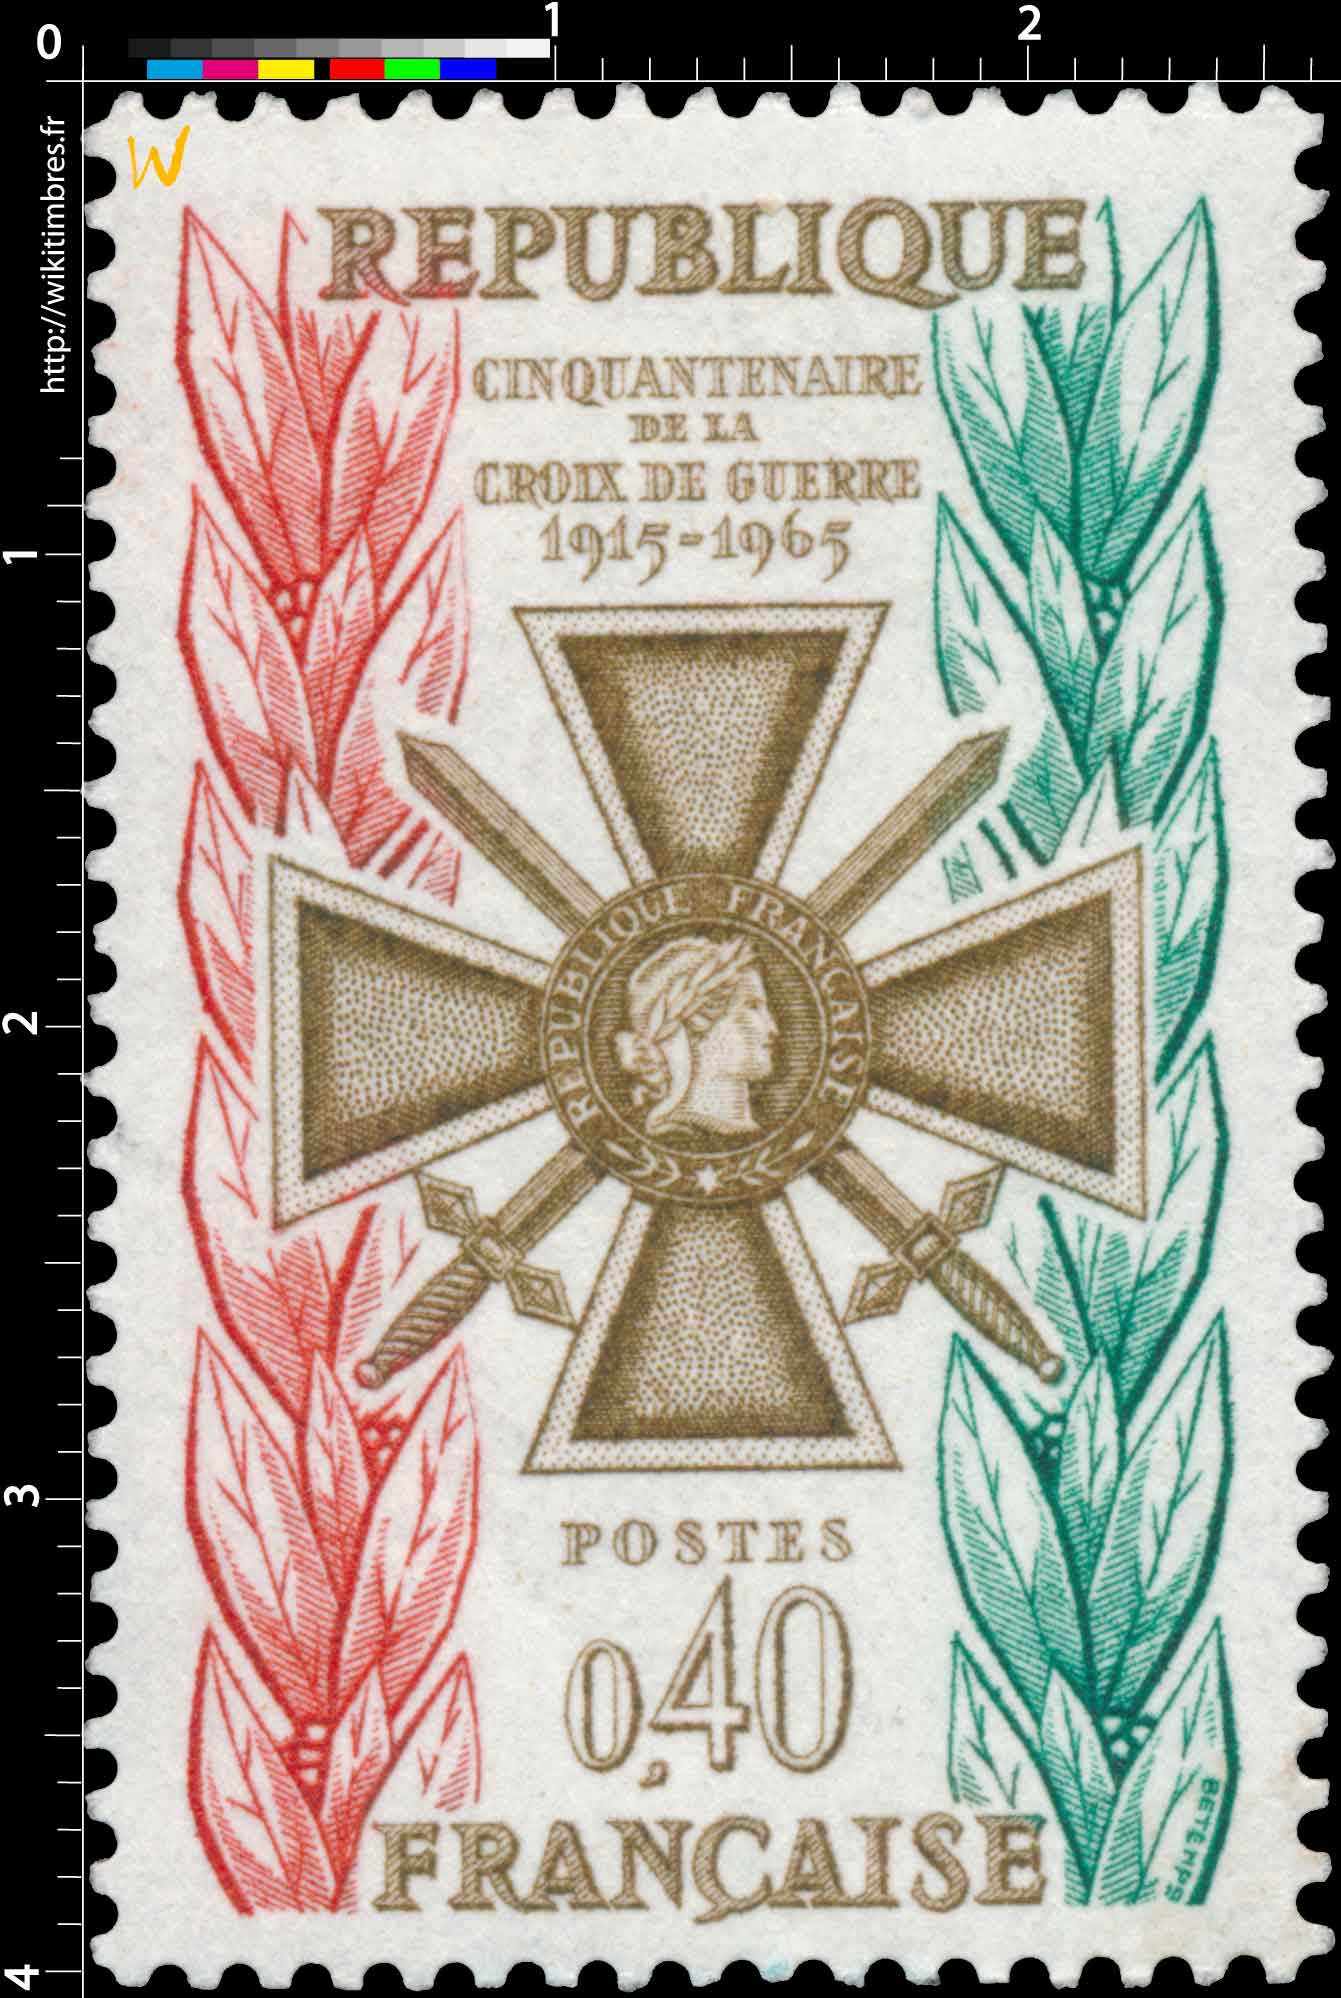 CINQUANTENAIRE DE LA CROIX DE GUERRE 1915-1965